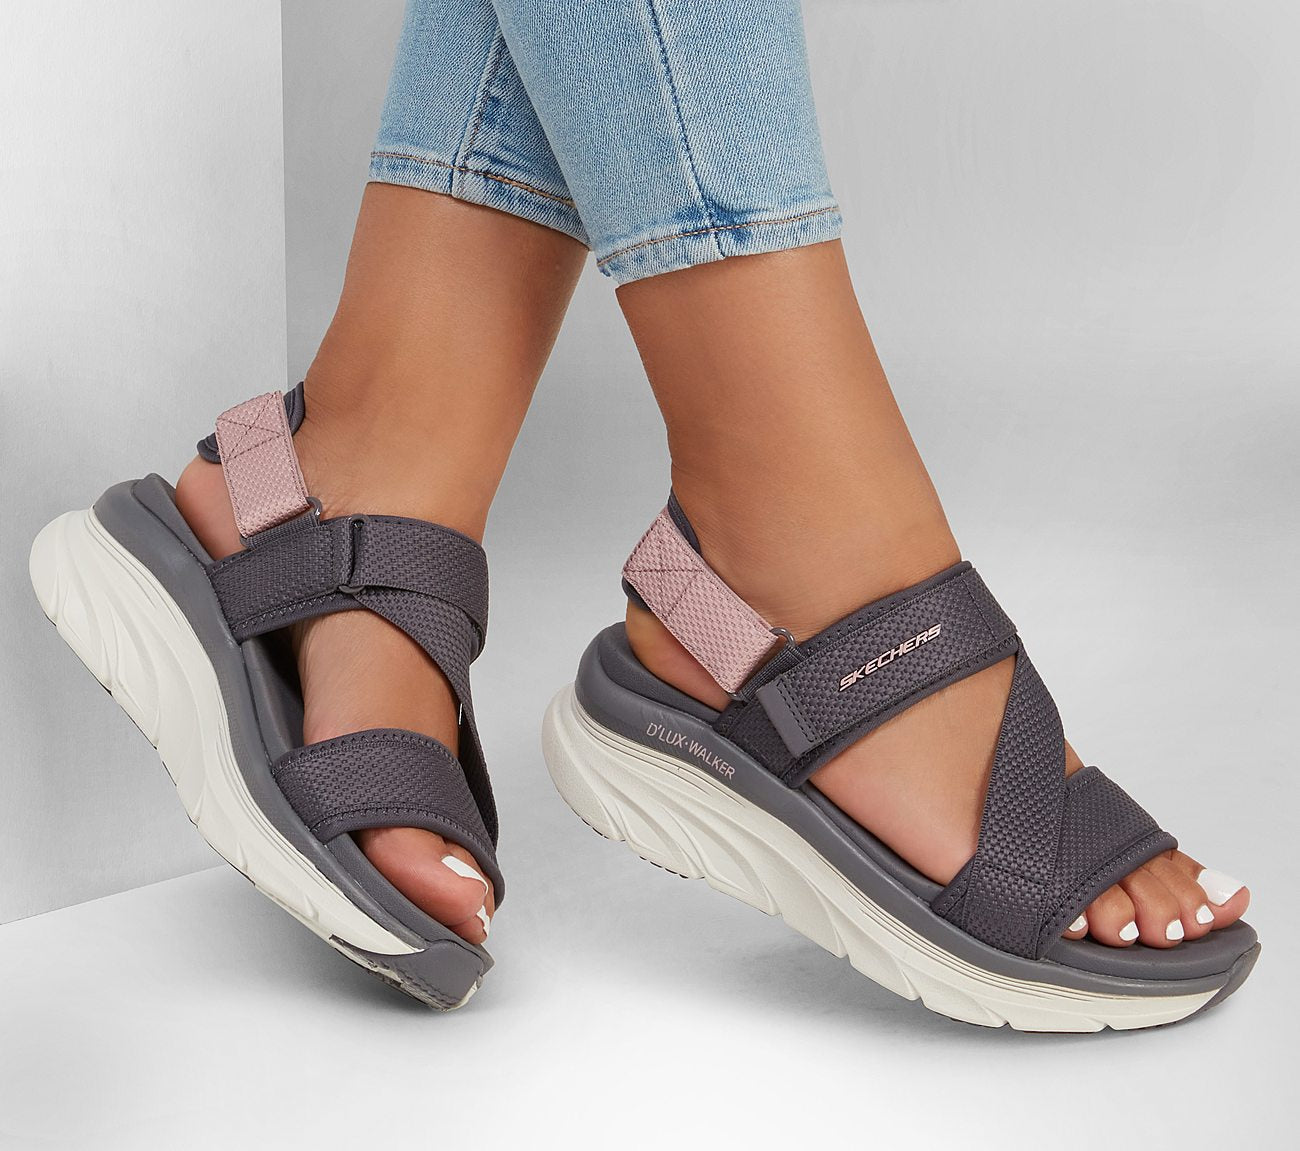 Relaxed Fit D'Lux Walker - Kind Mind Sandal Skechers